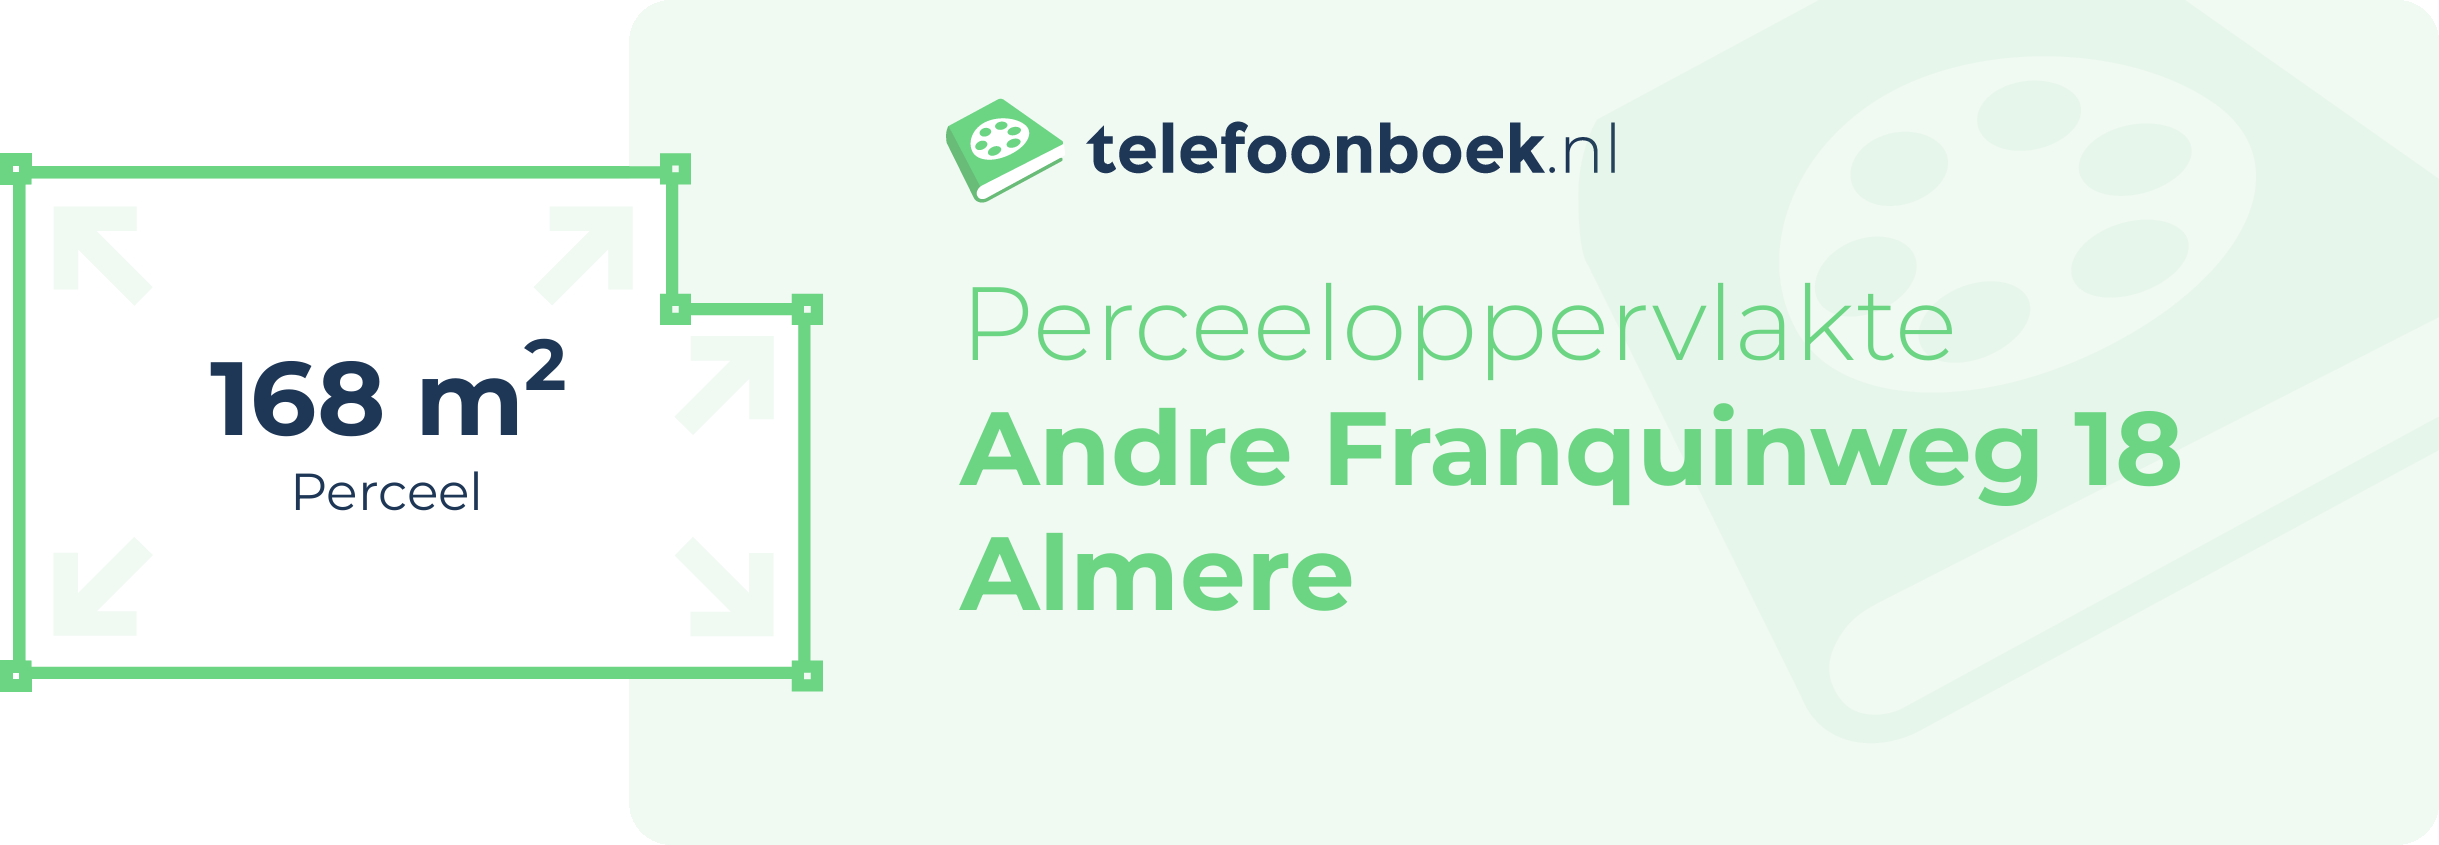 Perceeloppervlakte Andre Franquinweg 18 Almere